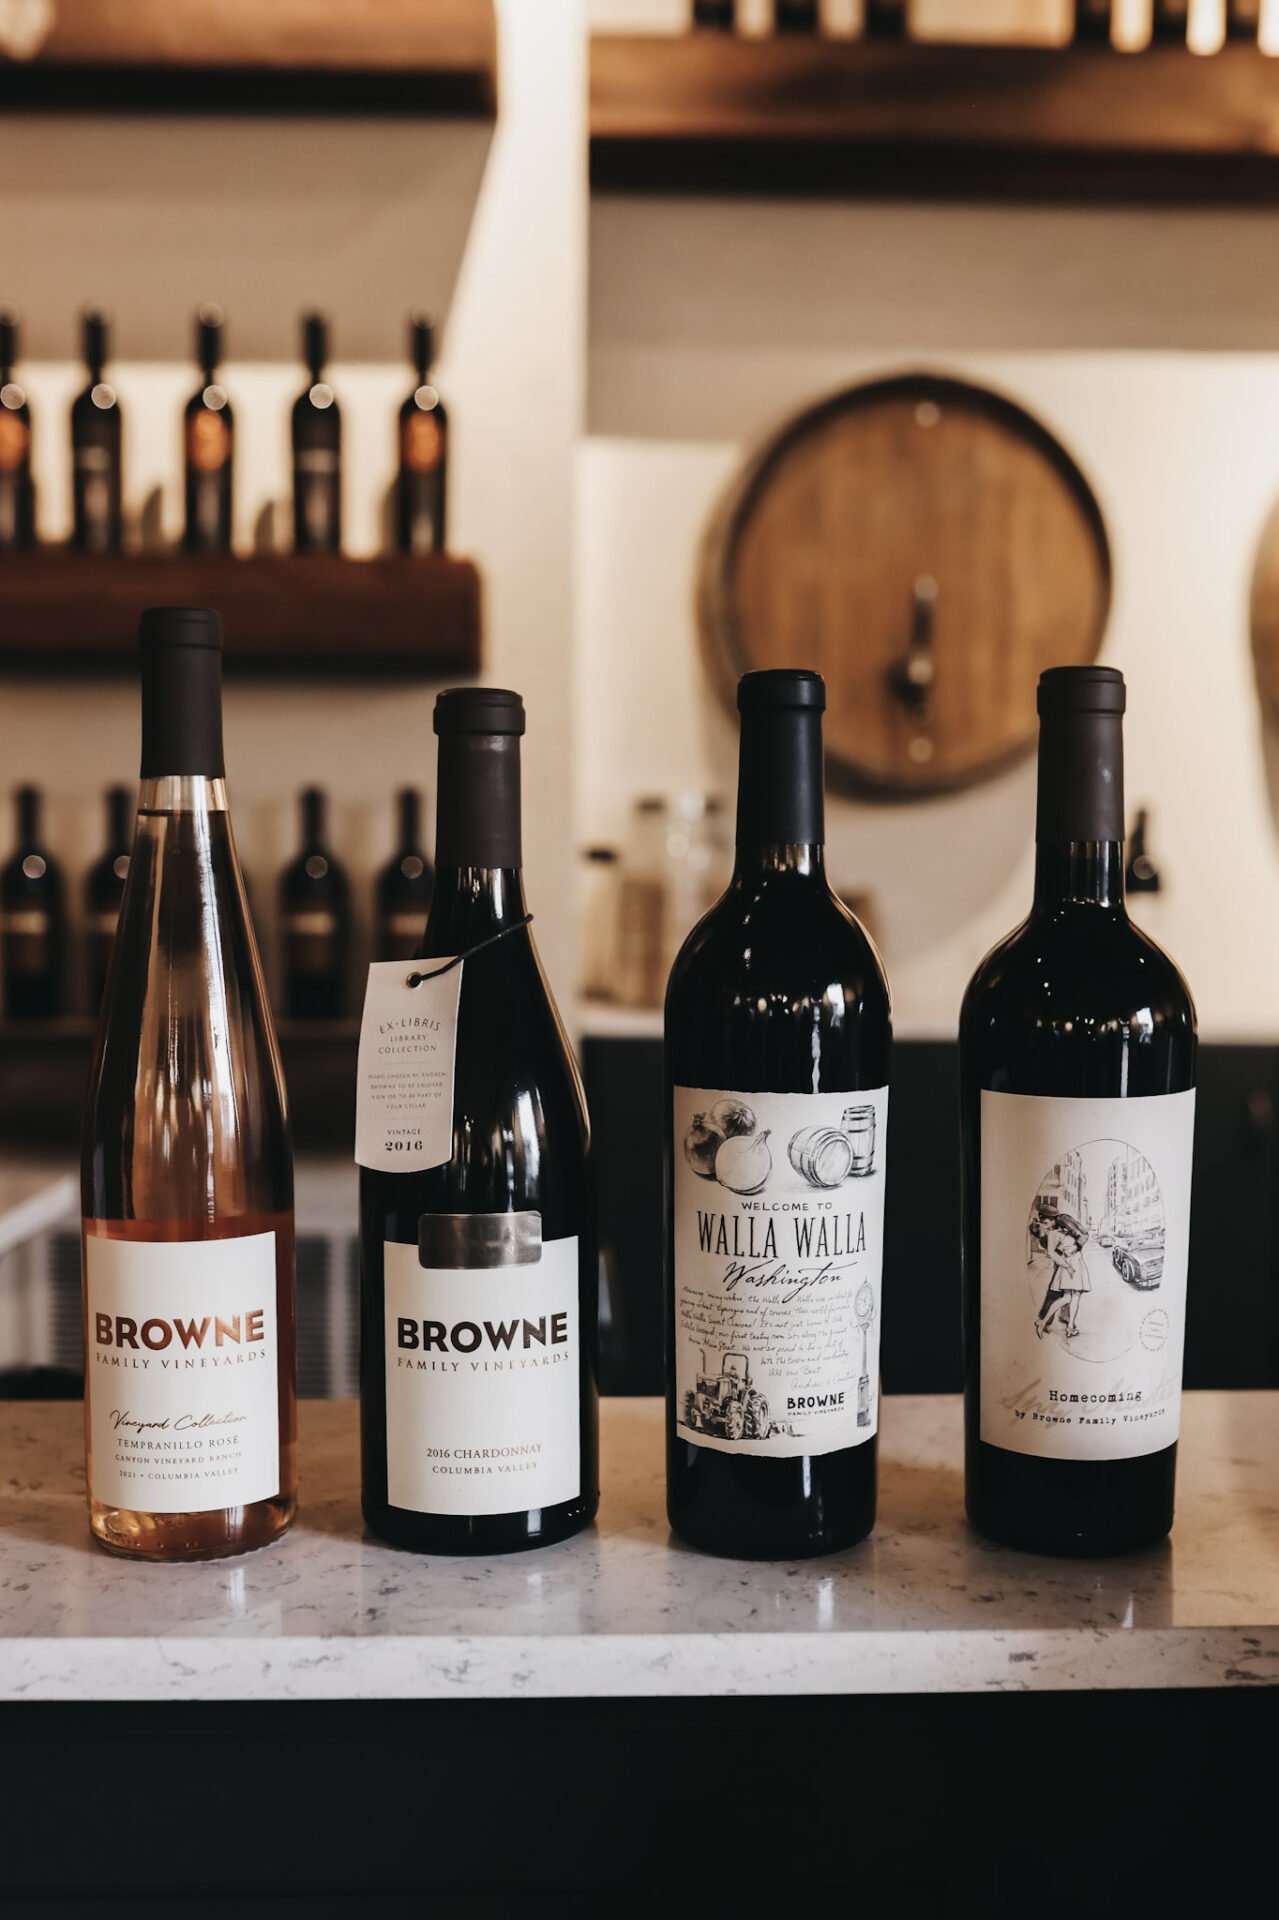 Browne Family Vineyards wine tasting lineup - bottles of what we tasted